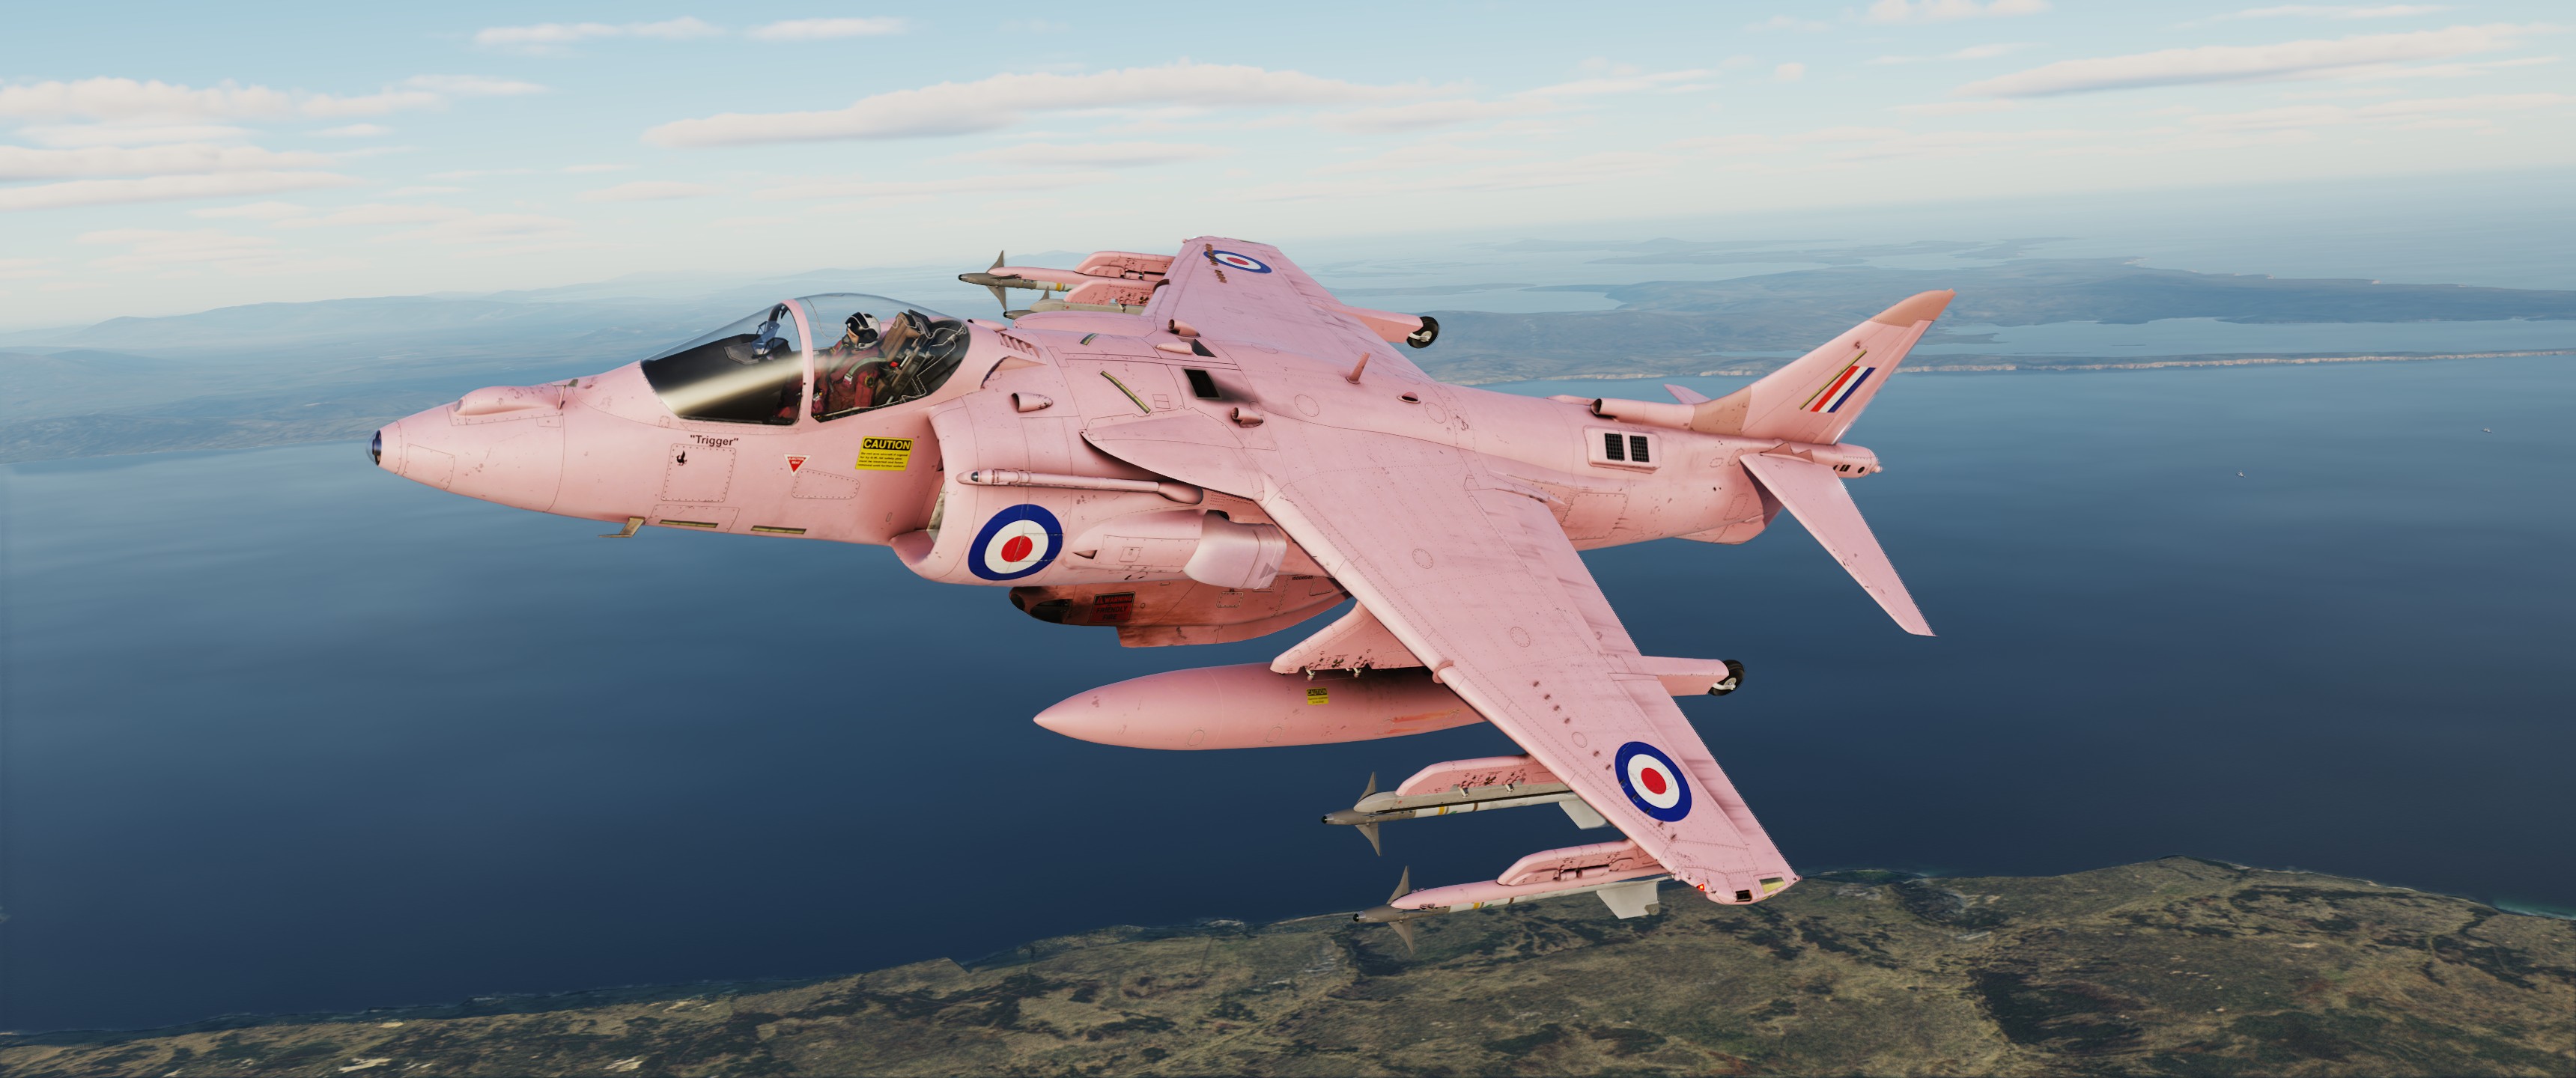 RAF Harrier Pink "Trigger"